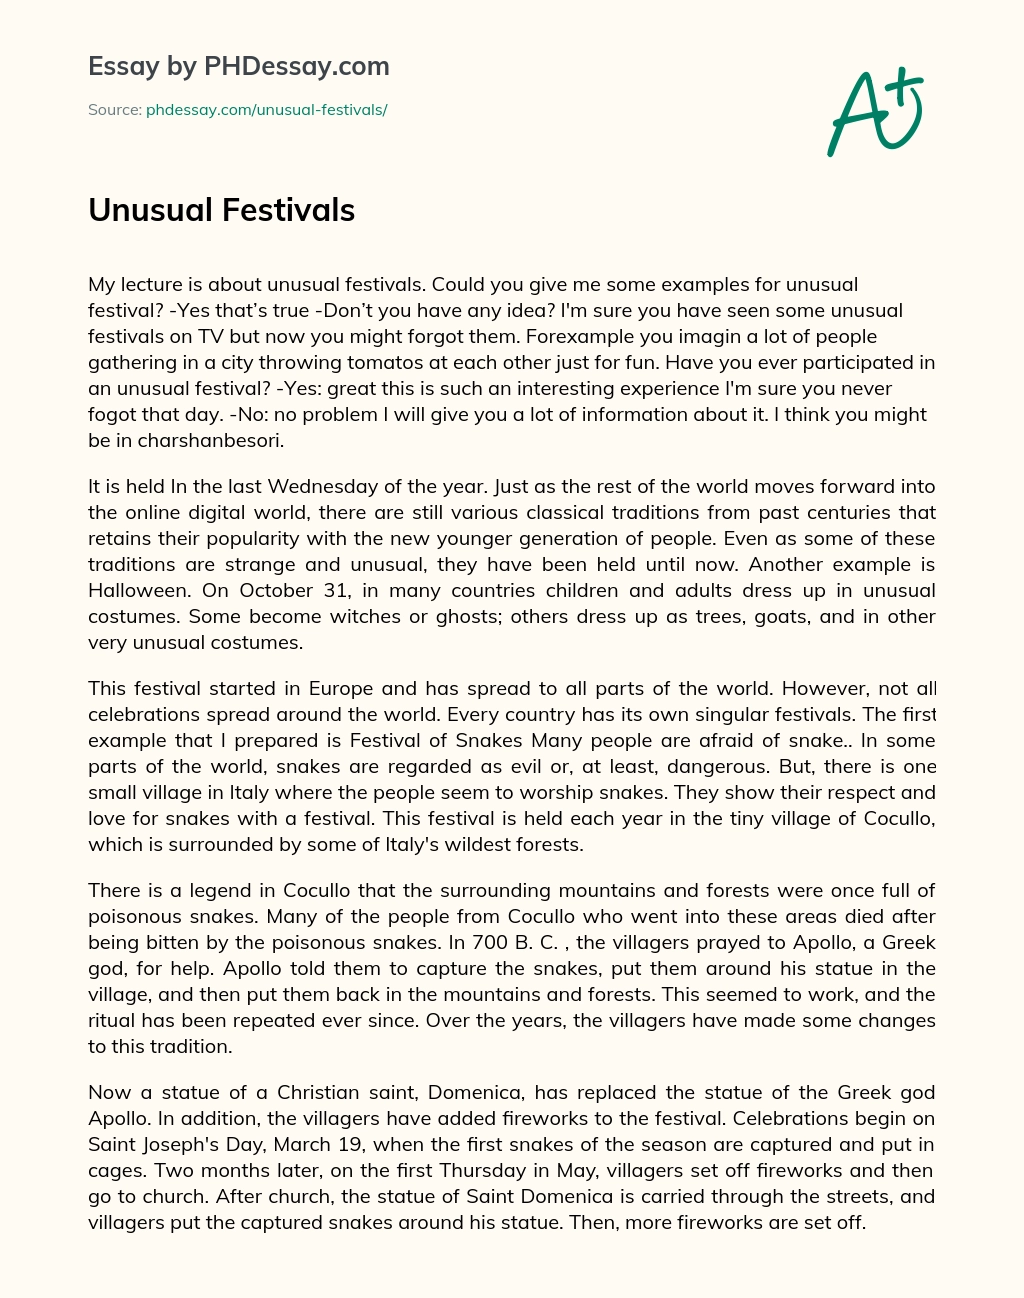 Unusual Festivals essay